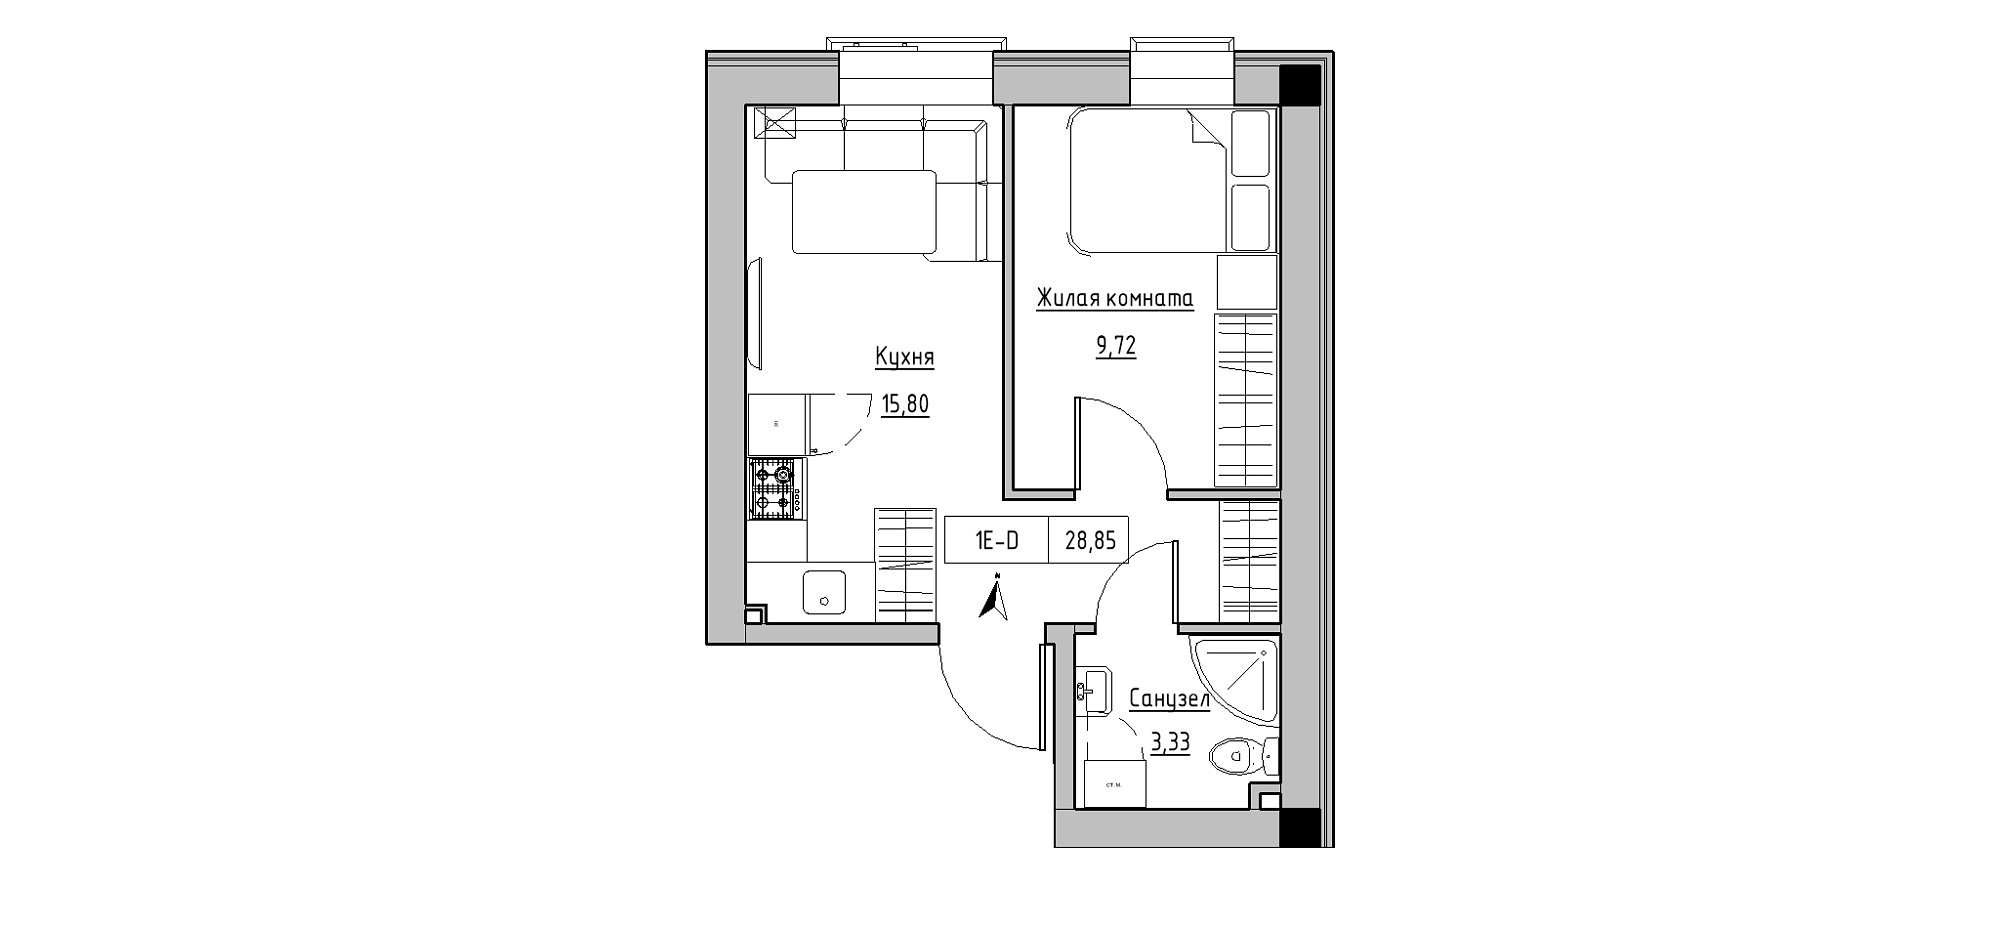 Планування 1-к квартира площею 28.85м2, KS-020-01/0002.